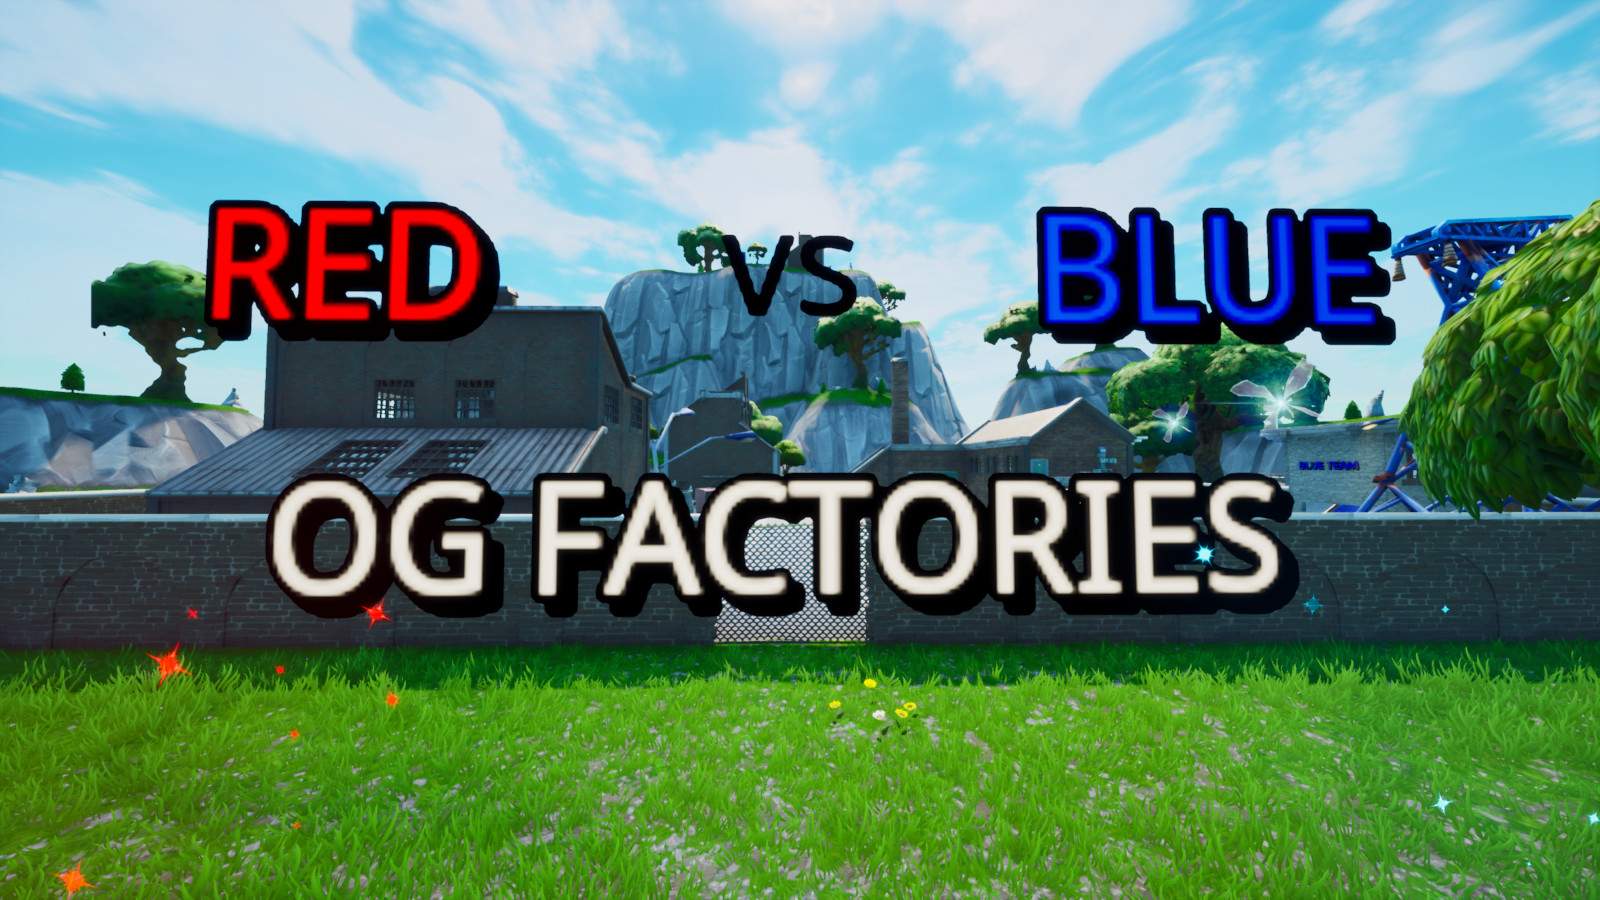 RED VS BLUE: OG FACTORIES